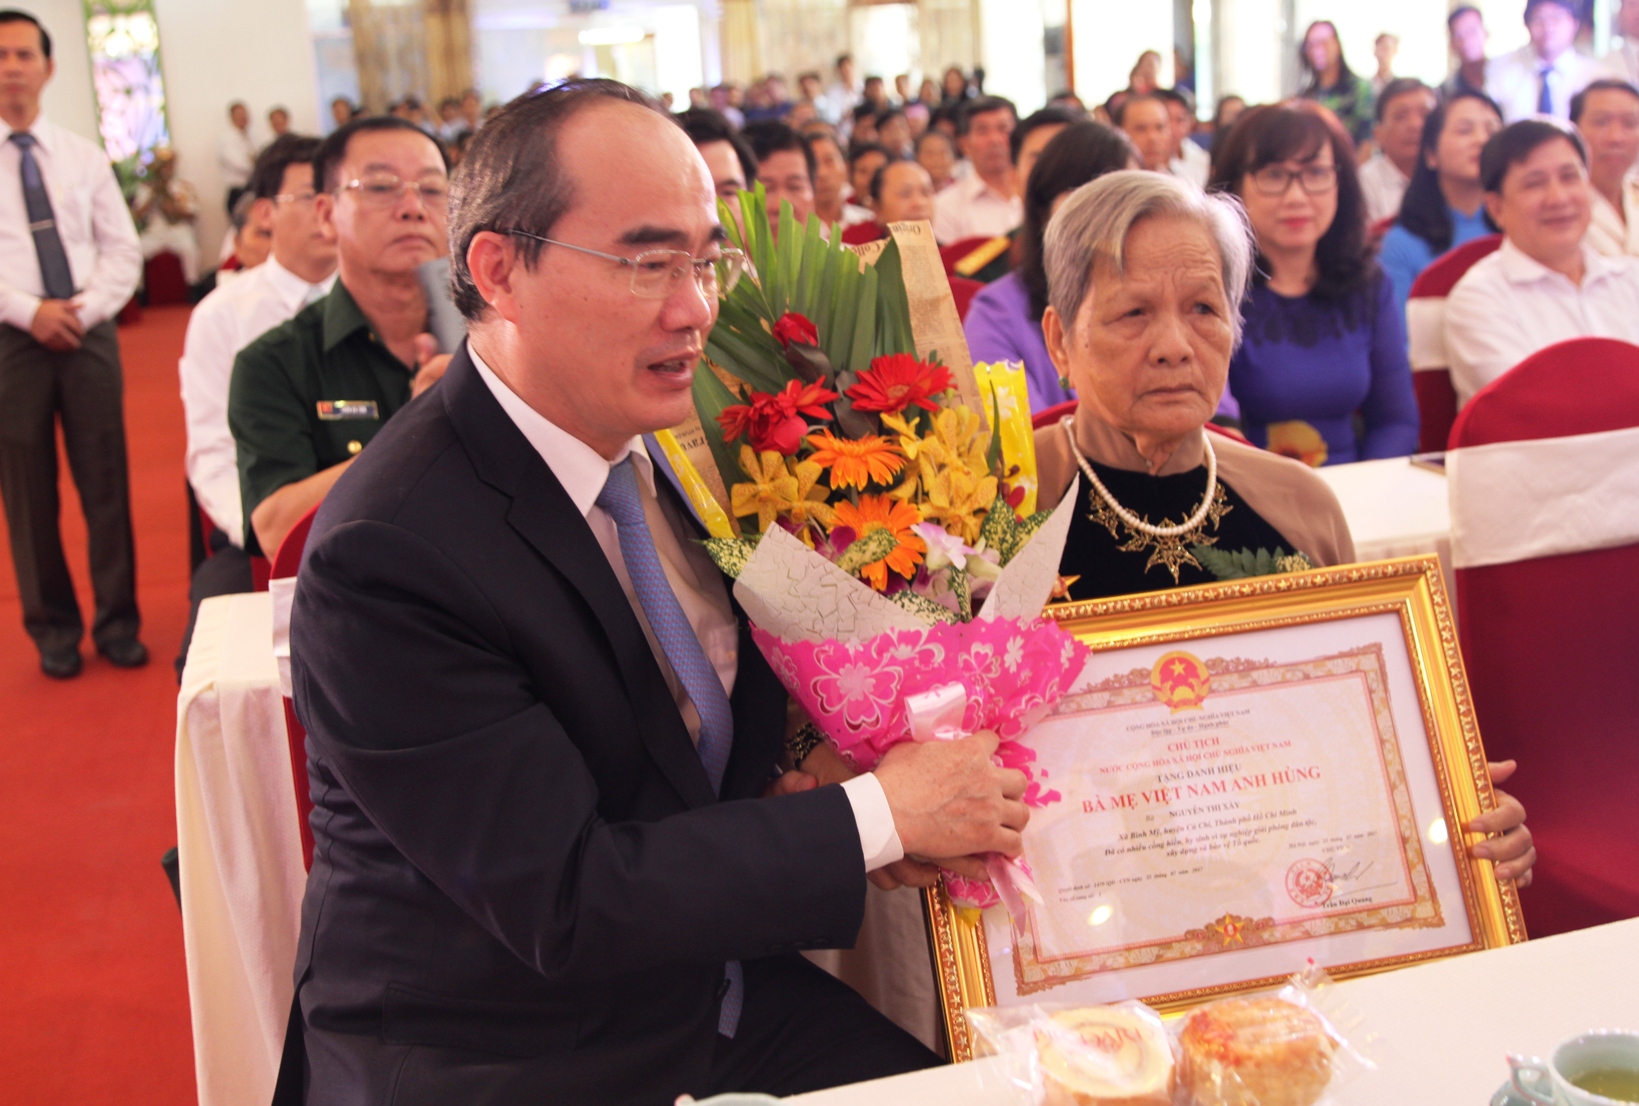 Mẹ Việt Nam anh hùng - một biểu tượng tuyệt vời của tình mẹ, của tình quê hương, của sự sáng suốt và dũng cảm. Chúng tôi hy vọng rằng những hình ảnh về họ sẽ khiến các bạn xúc động và tự hào được là con cháu của những người phụ nữ vĩ đại này.